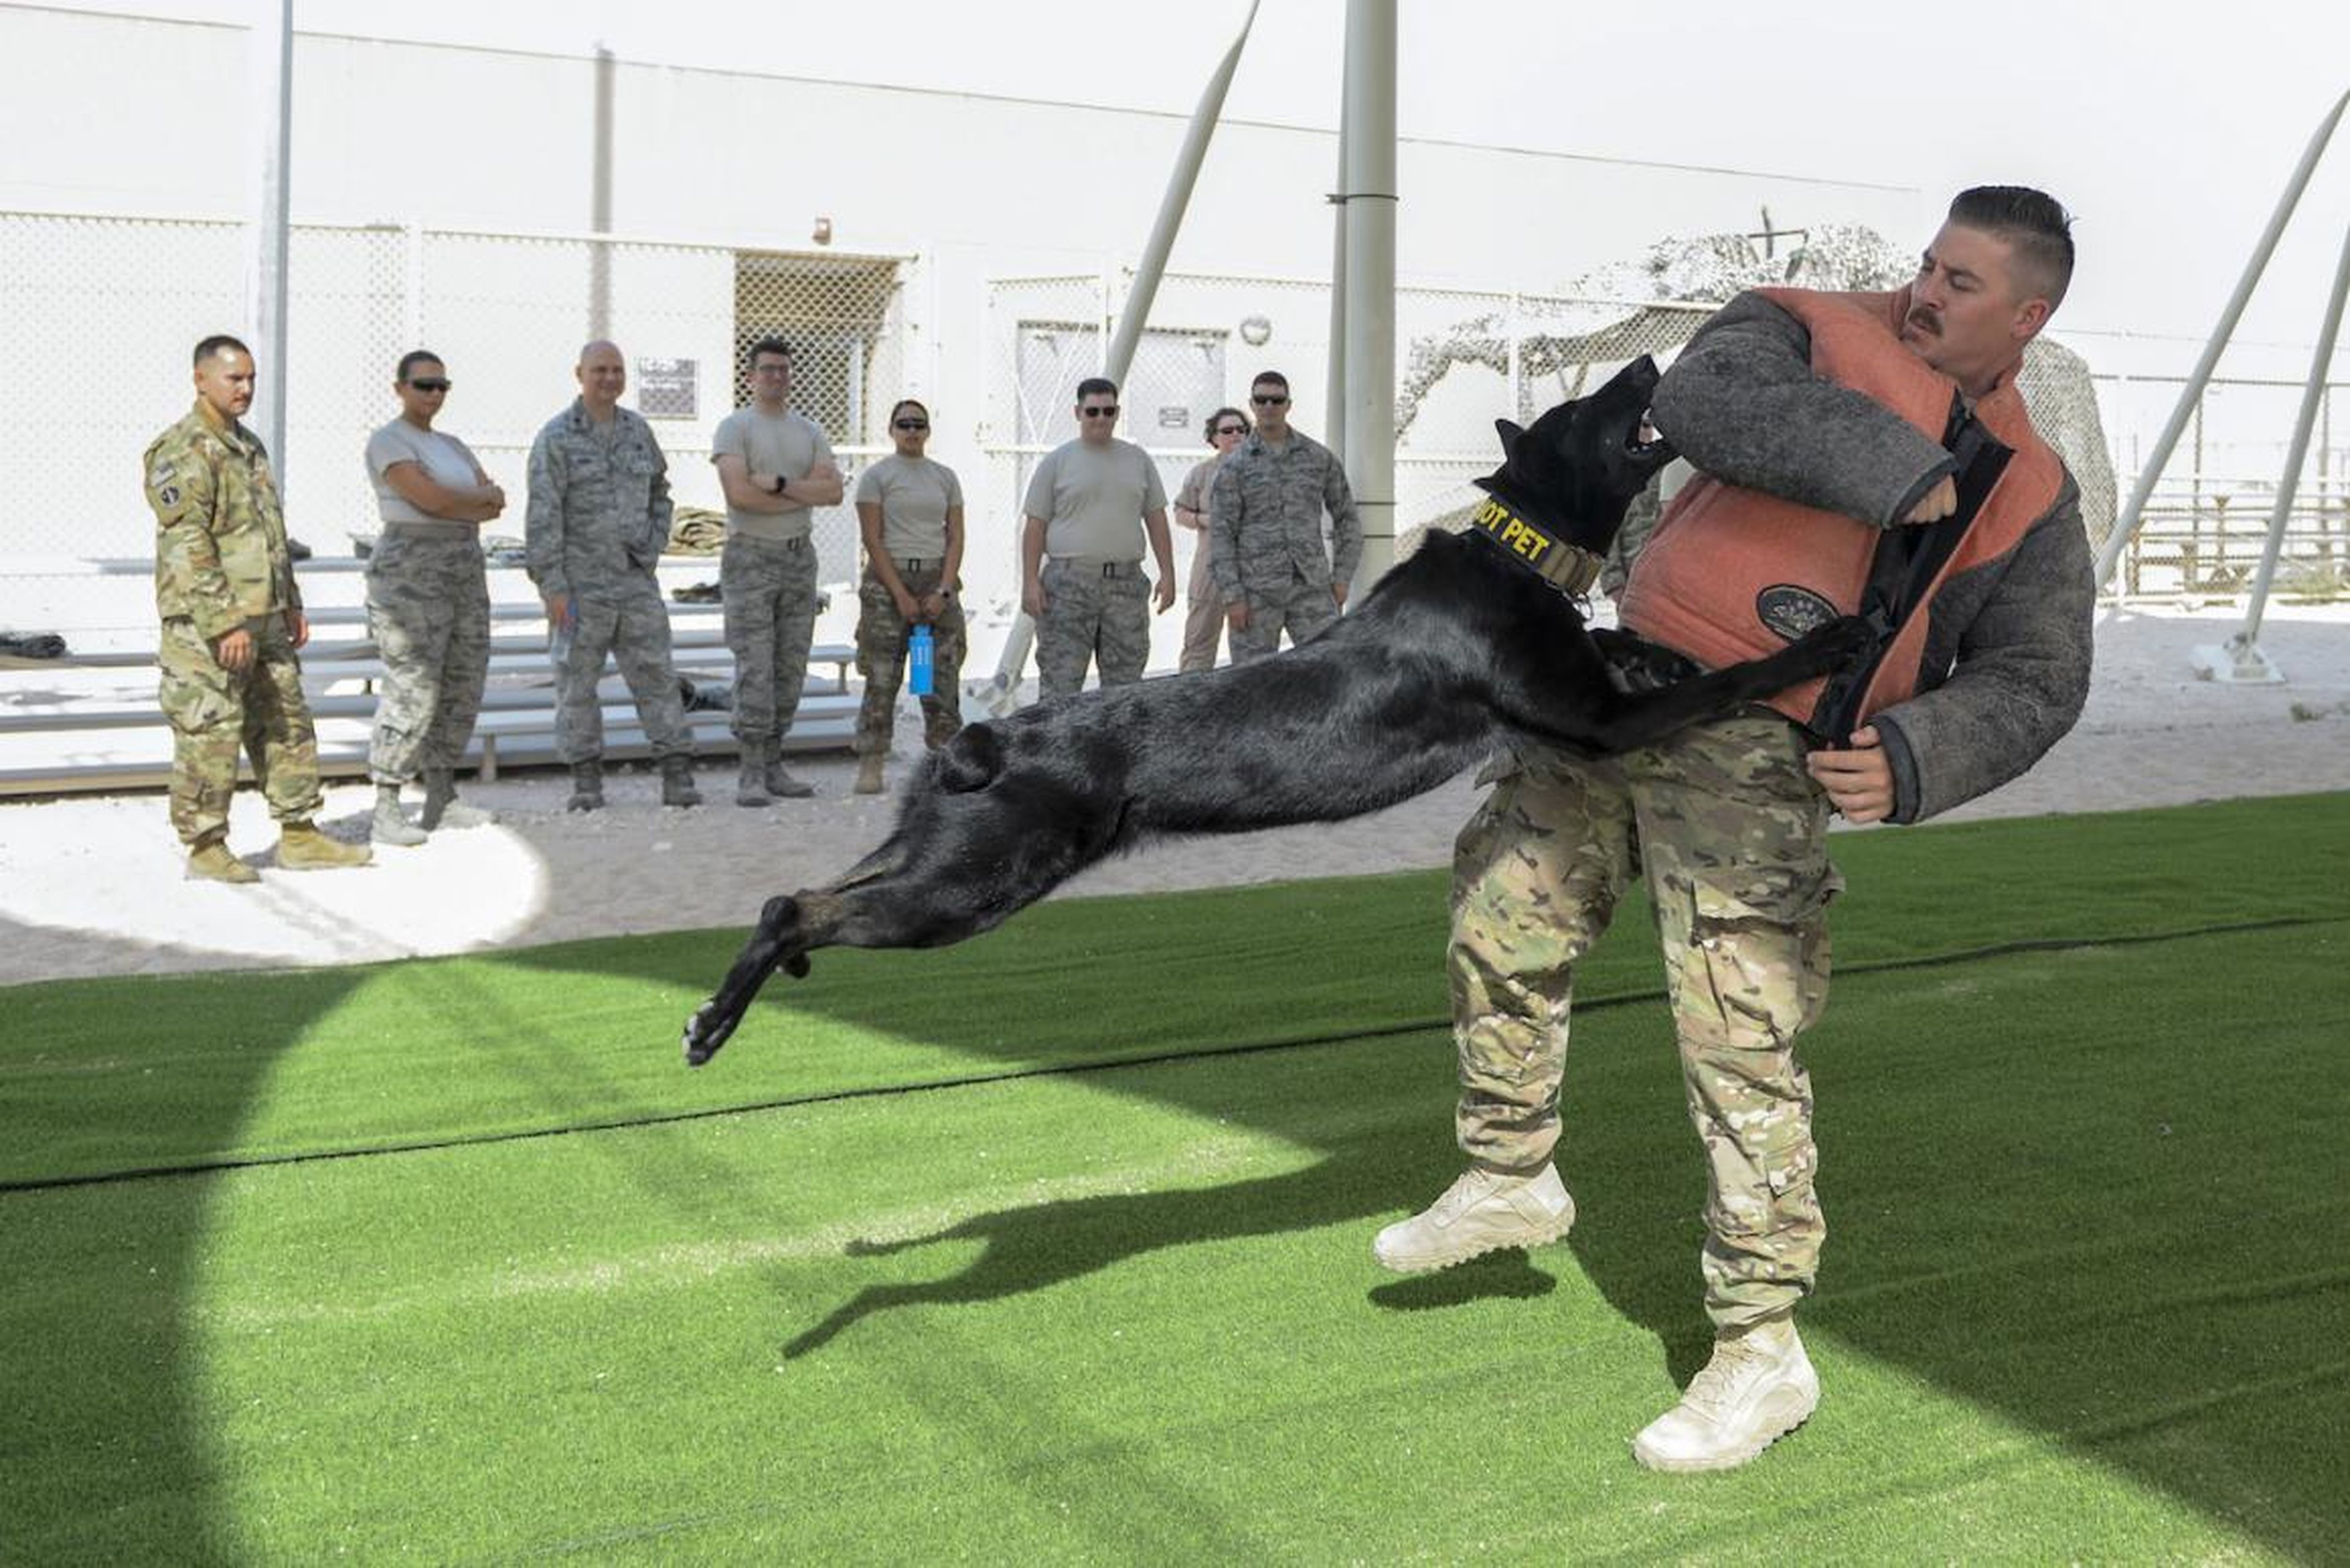 El sargento Brandon Stone, de las Fuerzas de Aire americanas, adiestrador de perros, se protege del impacto de Cola durante una demostración del ejercicio K-9, 17 de agosto de 2017